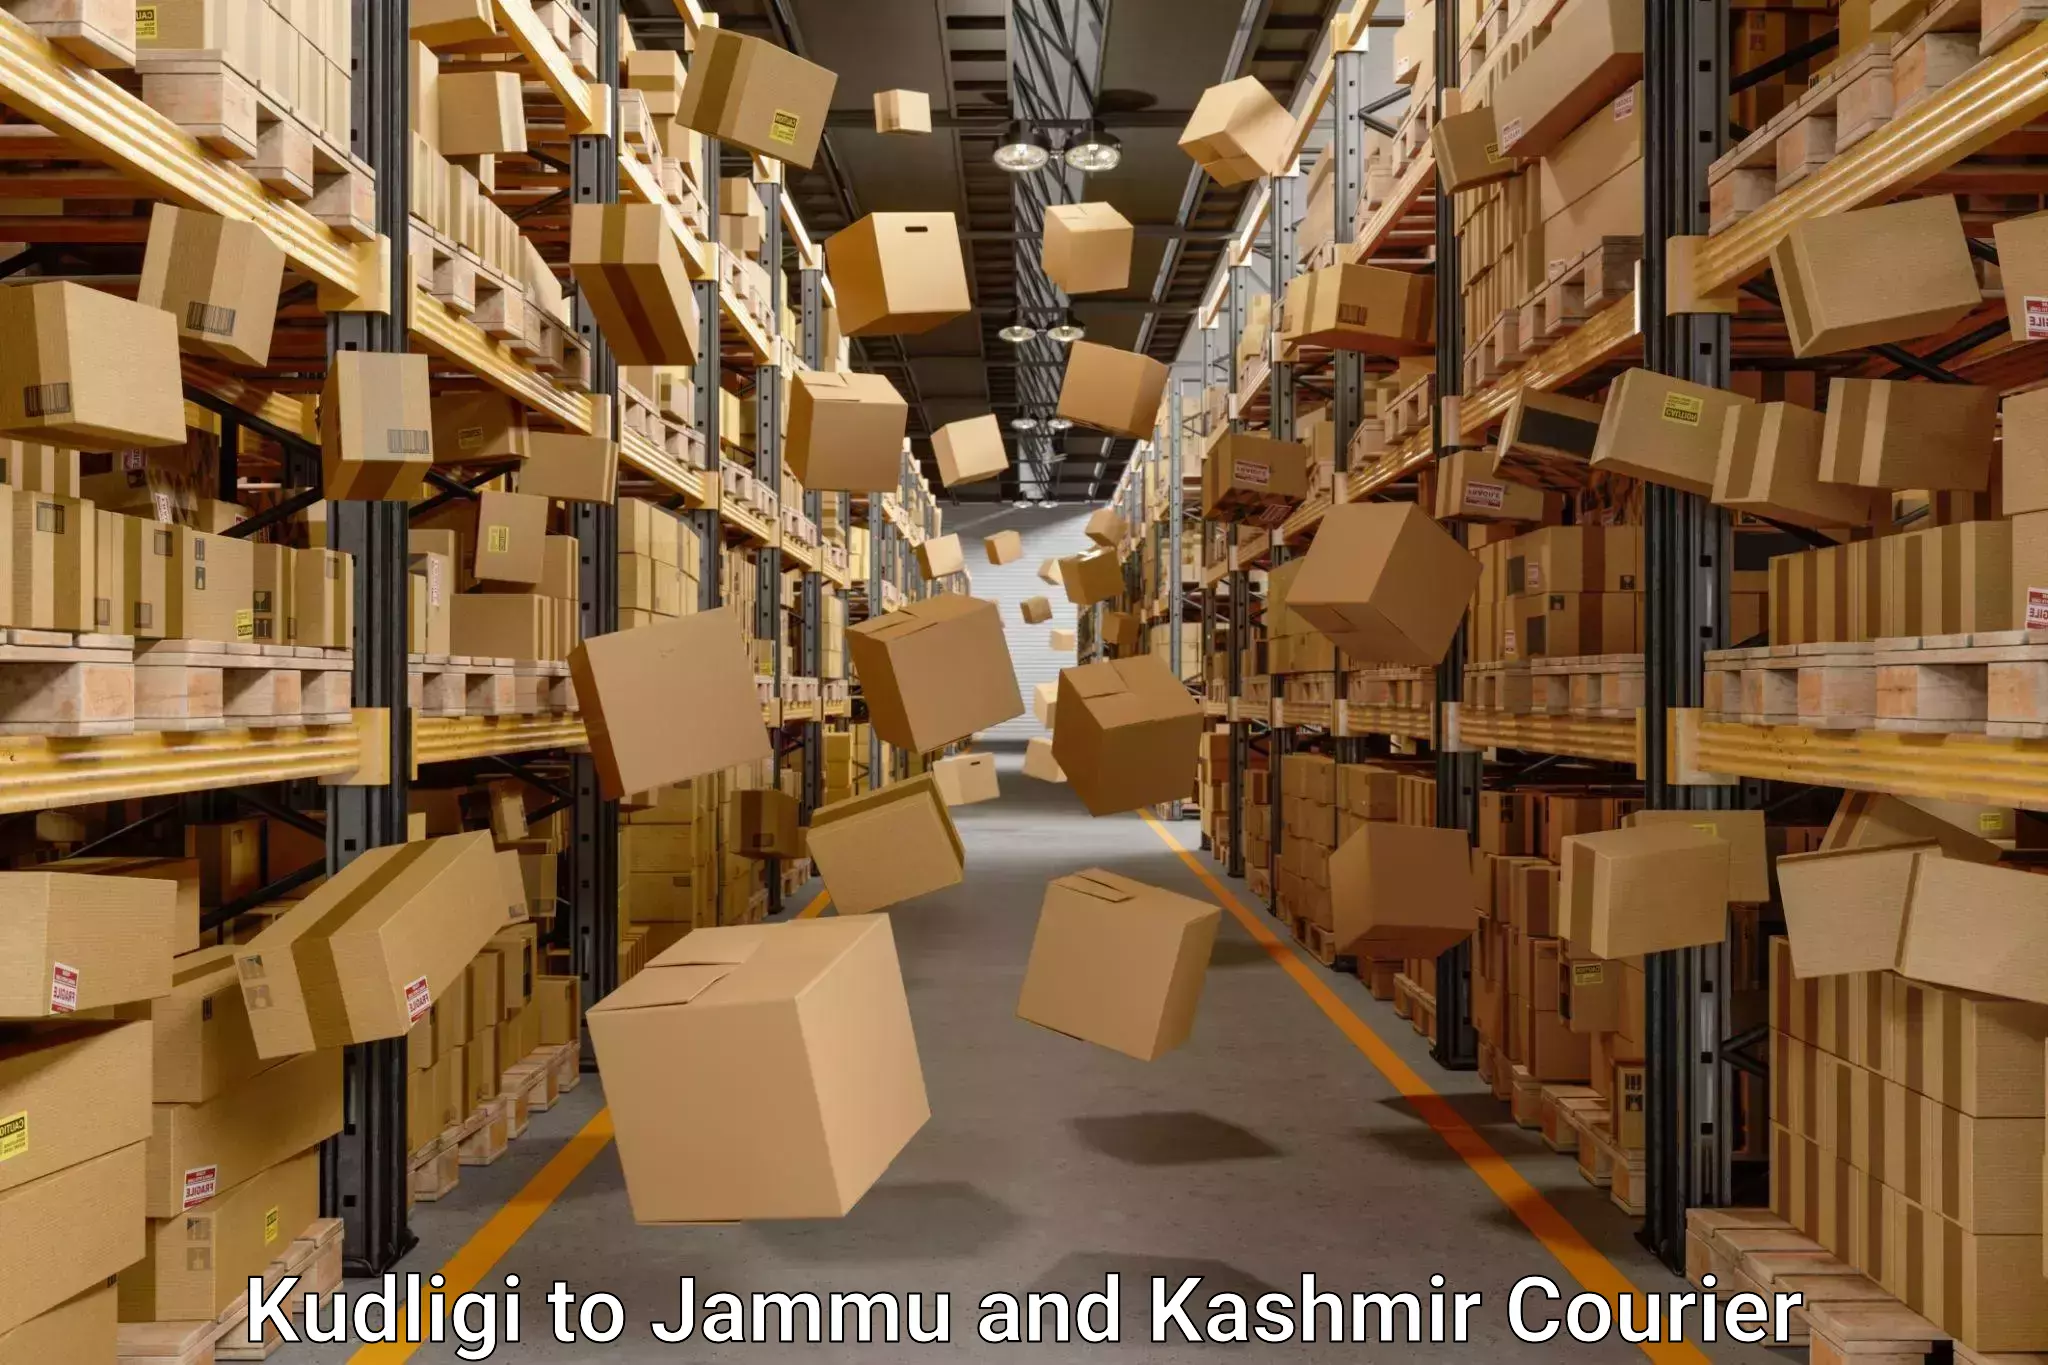 Efficient moving company Kudligi to Jammu and Kashmir